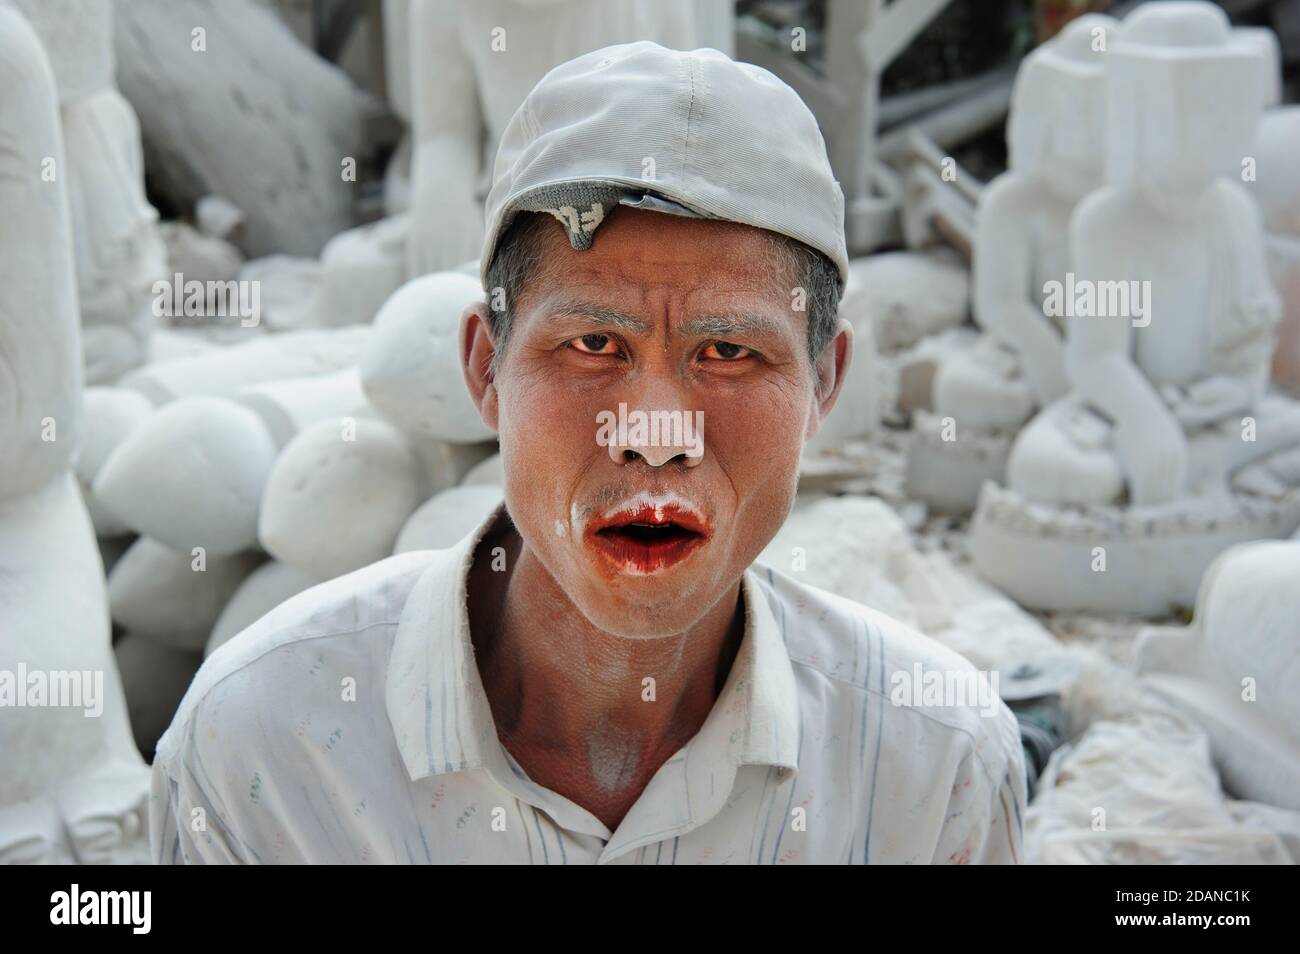 El fantasmal un carver de mármol birmano cubierto de blanco fino polvo de mármol su boca manchada de rojo de la nuez de betel masticando dándole una mirada fantasmal atormentada Foto de stock